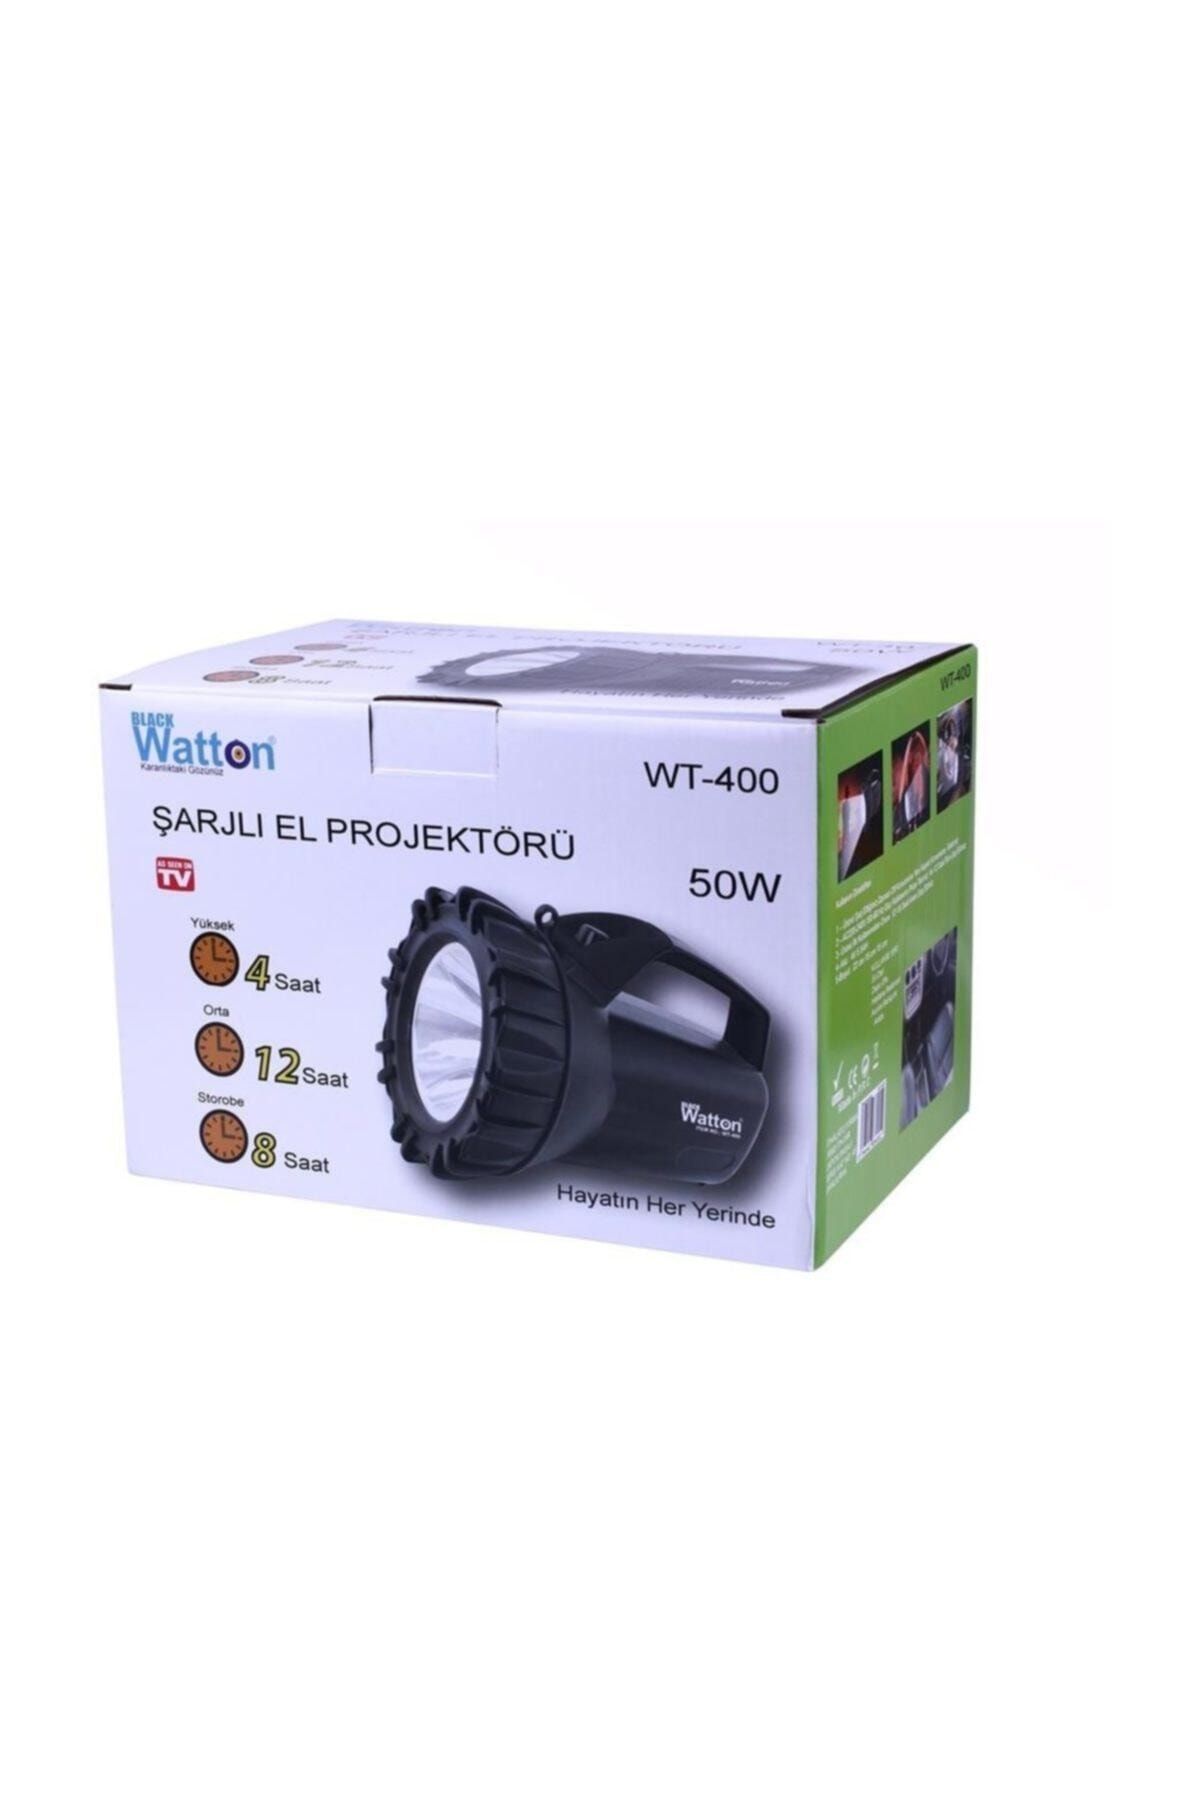 Watton Wt-400 Şarjlı 50 W Projektör